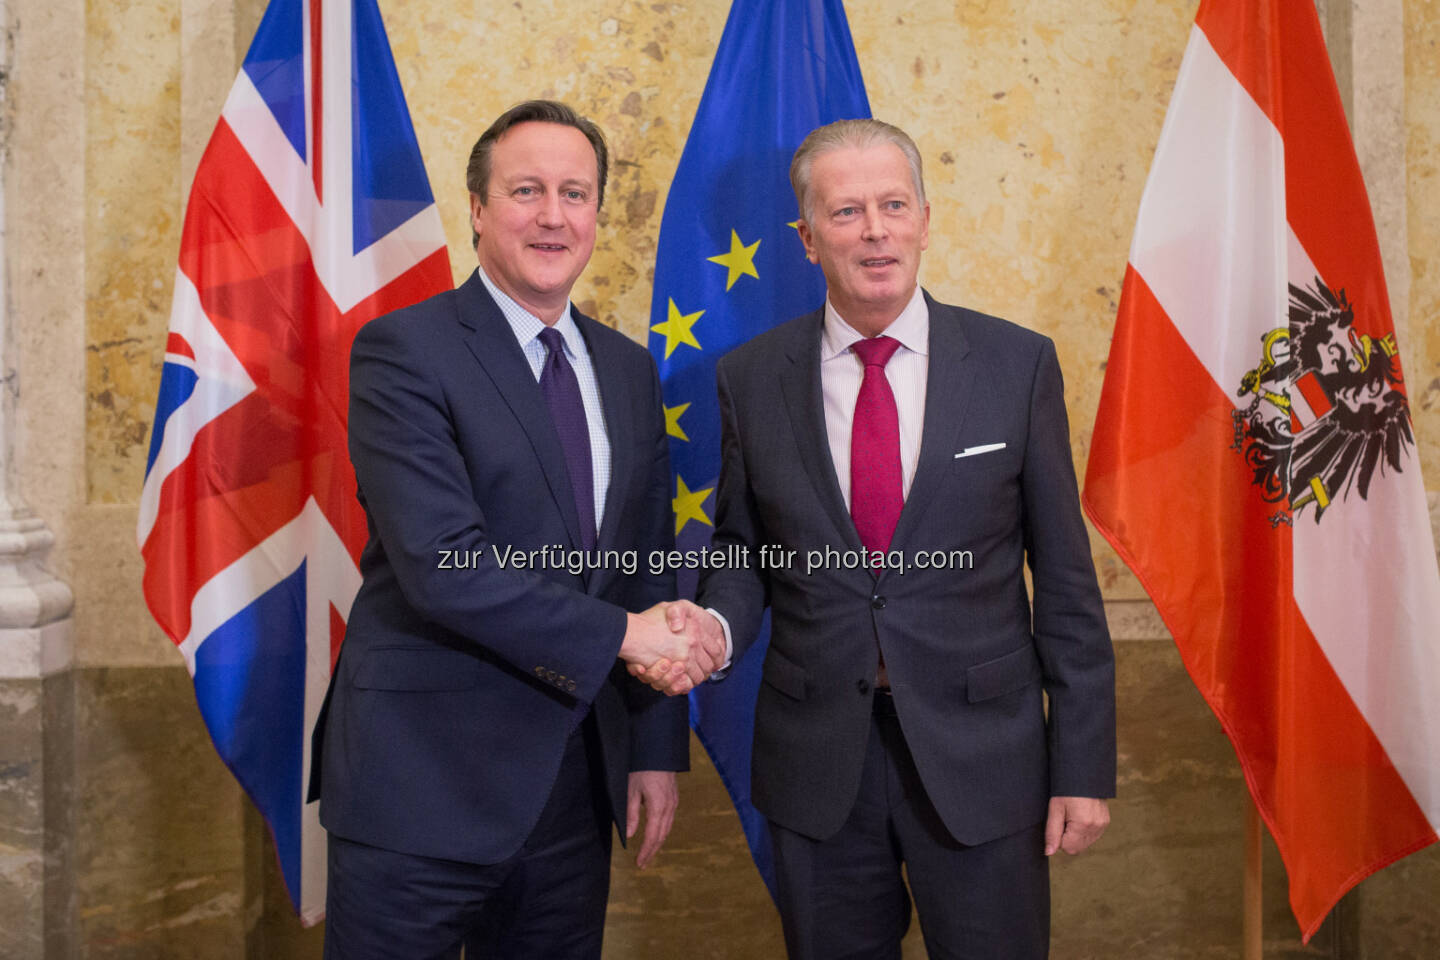 David Cameron und Reinhold Mitterlehner: Bundesministerium für Wissenschaft, Forschung und Wirtschaft: Vizekanzler Mitterlehner traf britischen Premierminister Cameron: Wir brauchen ein starkes Großbritannien in der Europäischen Union 